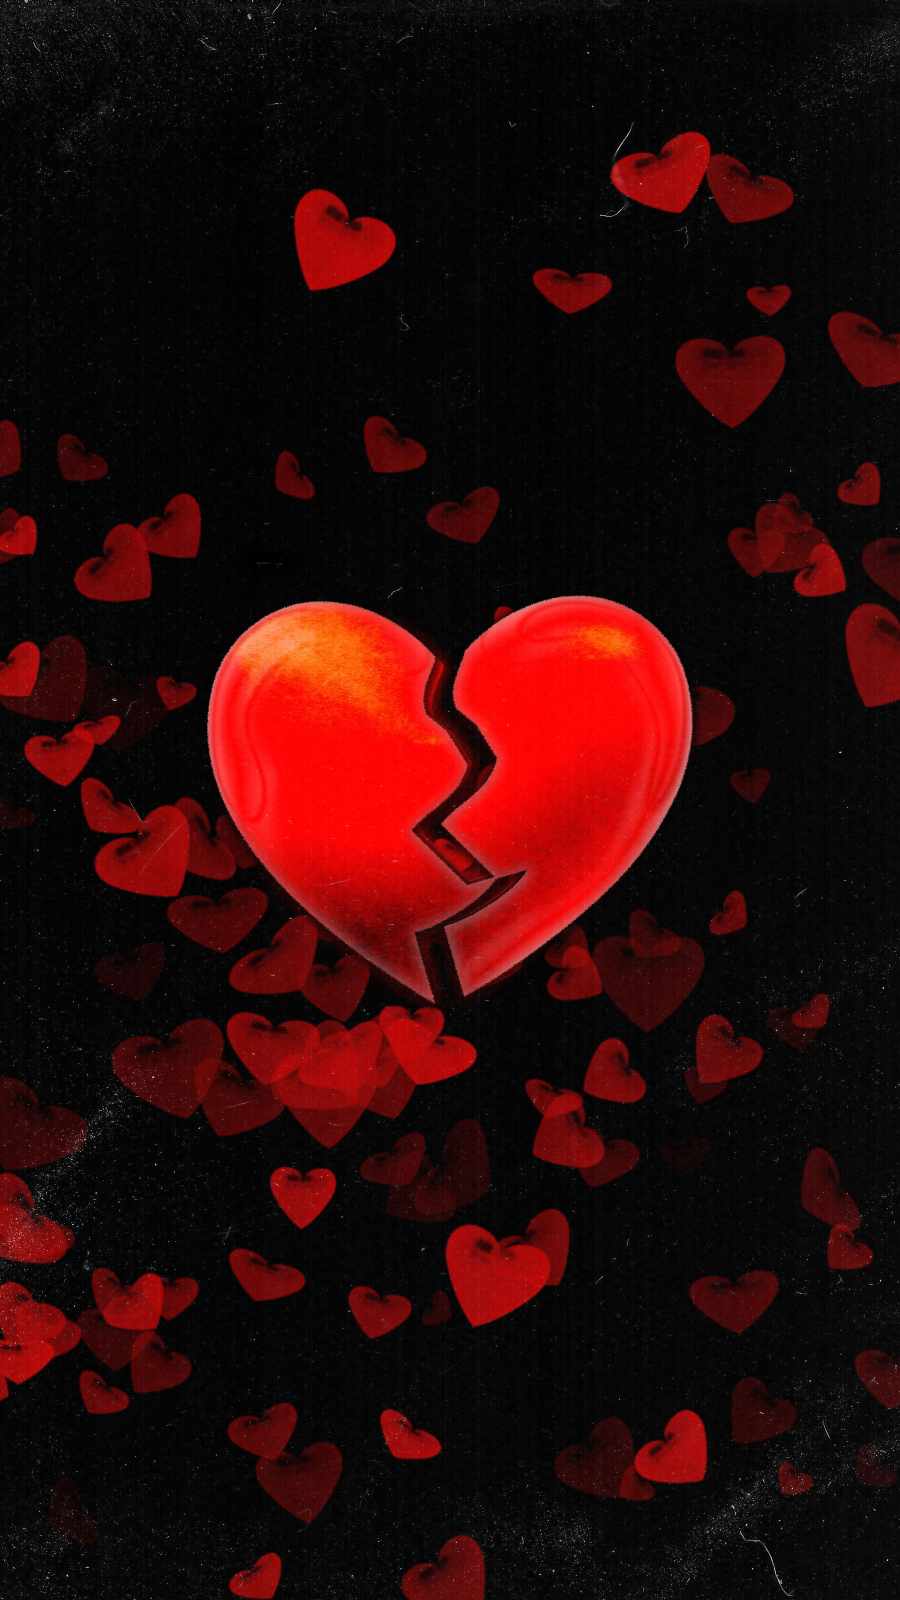 Broken Heart iPhone Wallpaper